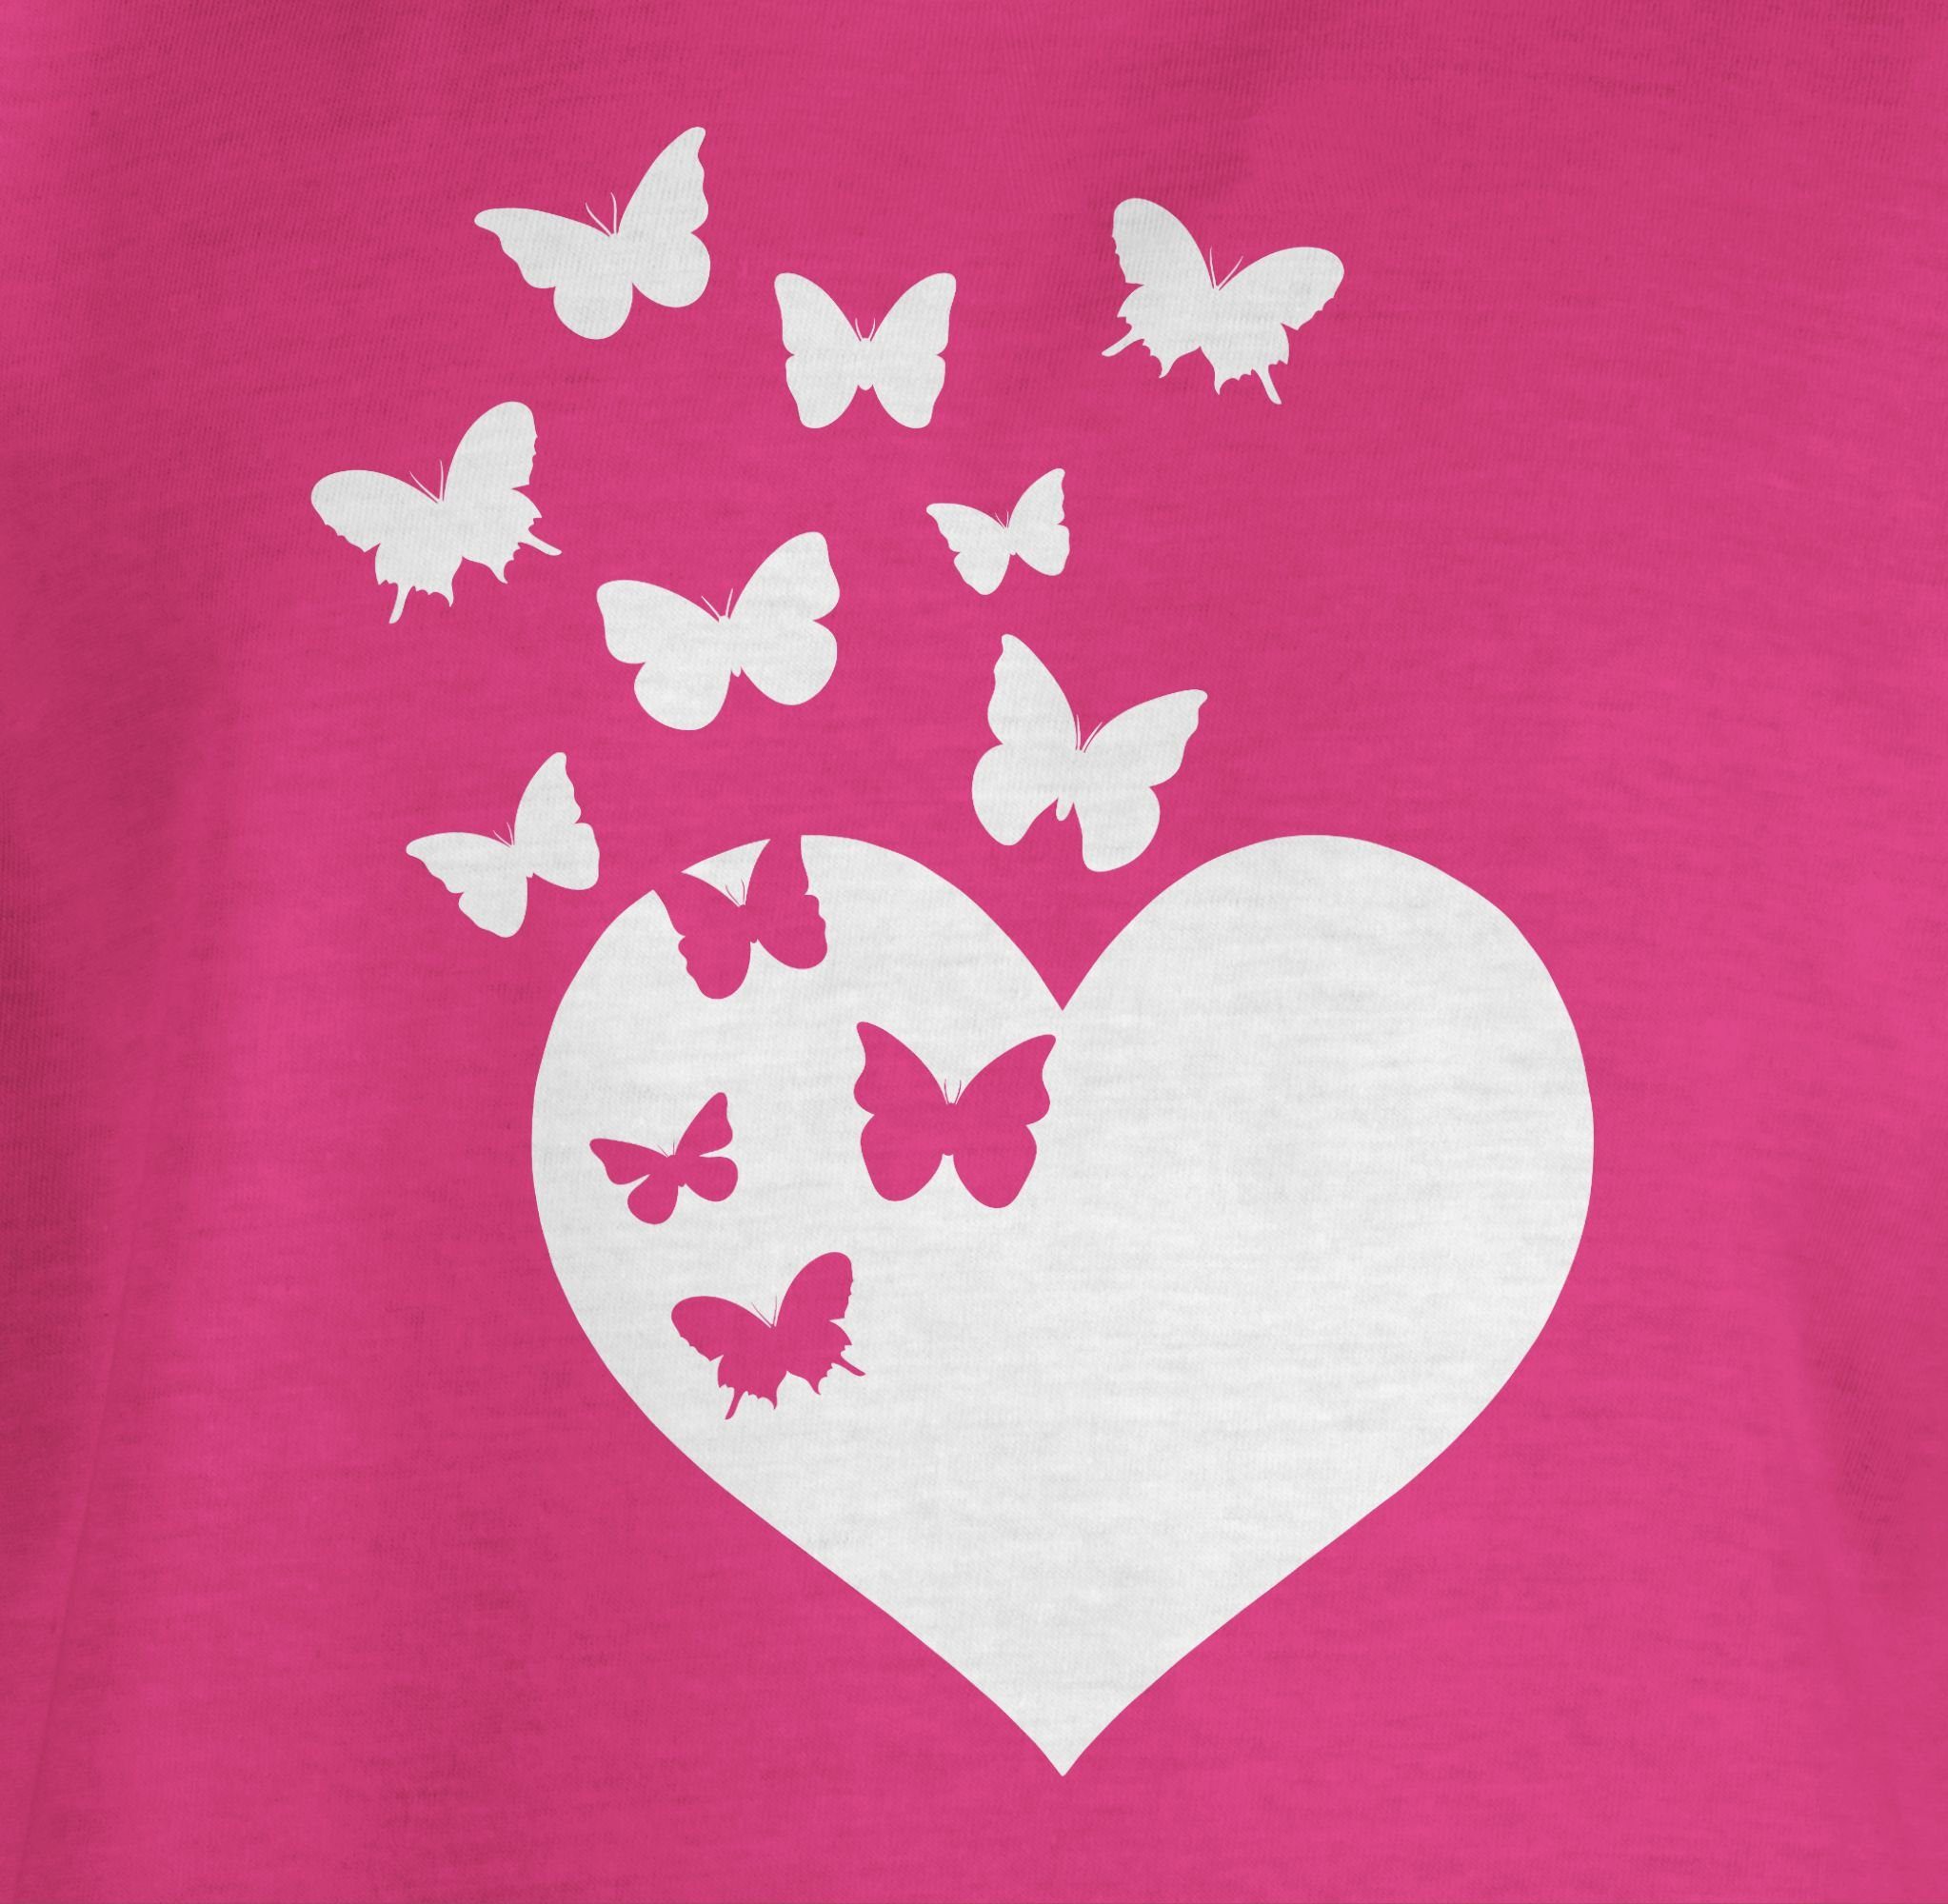 T-Shirt Shirtracer Geschenkidee Fuchsia Herz Schmetterlingen süße mit 1